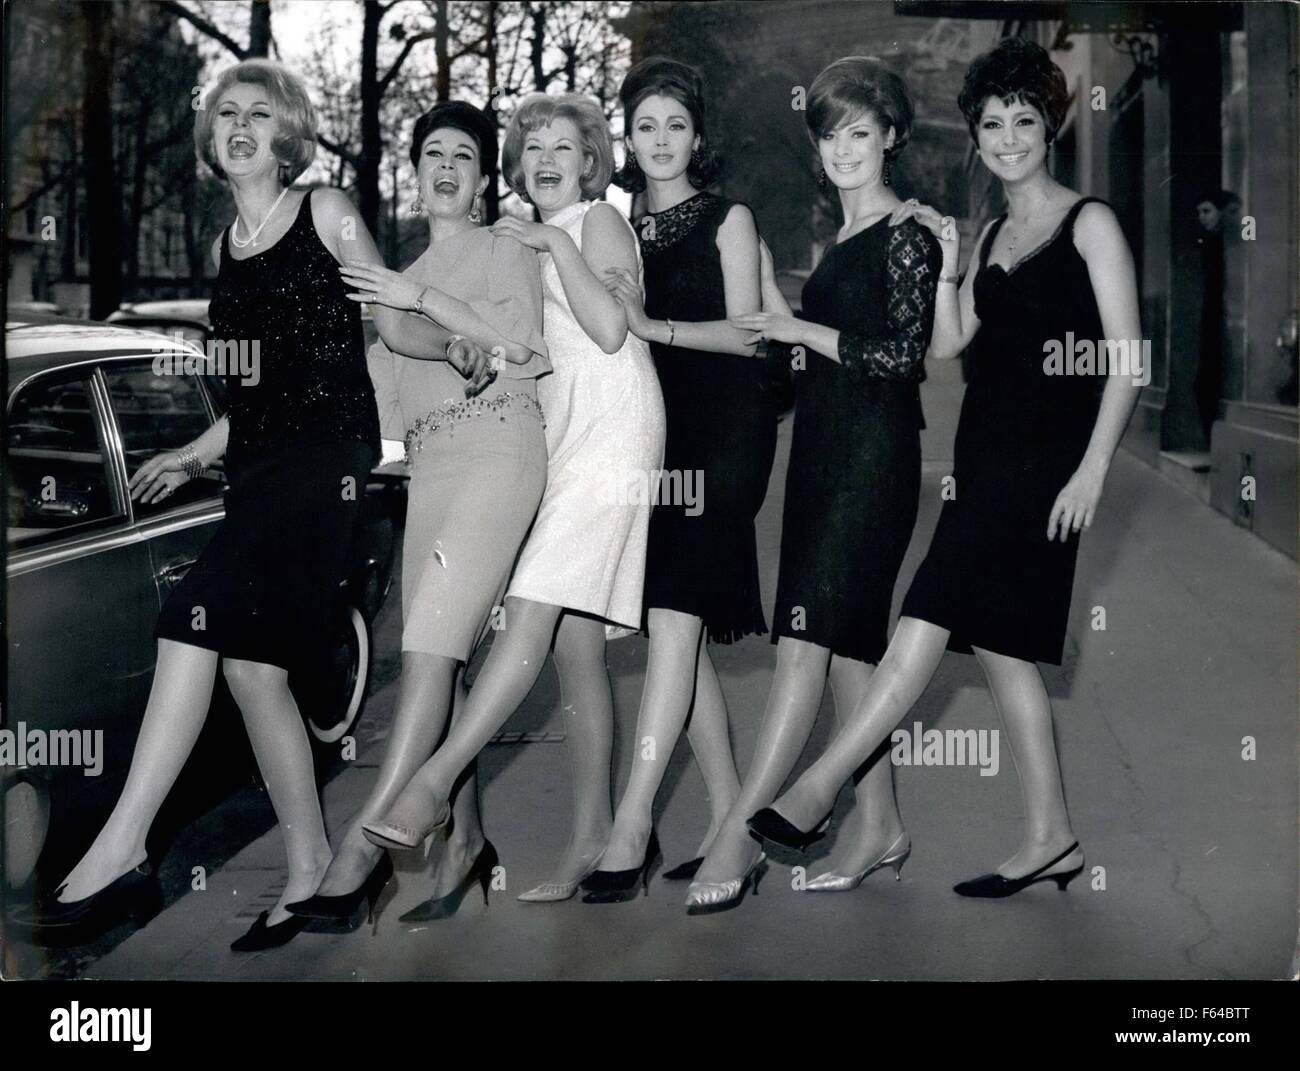 1957 - Off Para la elegancia Festival: Seis Misses han sido reclutados por  la elegancia francesa comité para representar a Francia en el Festival de  elegancia que contemplamos en Alemania. La foto